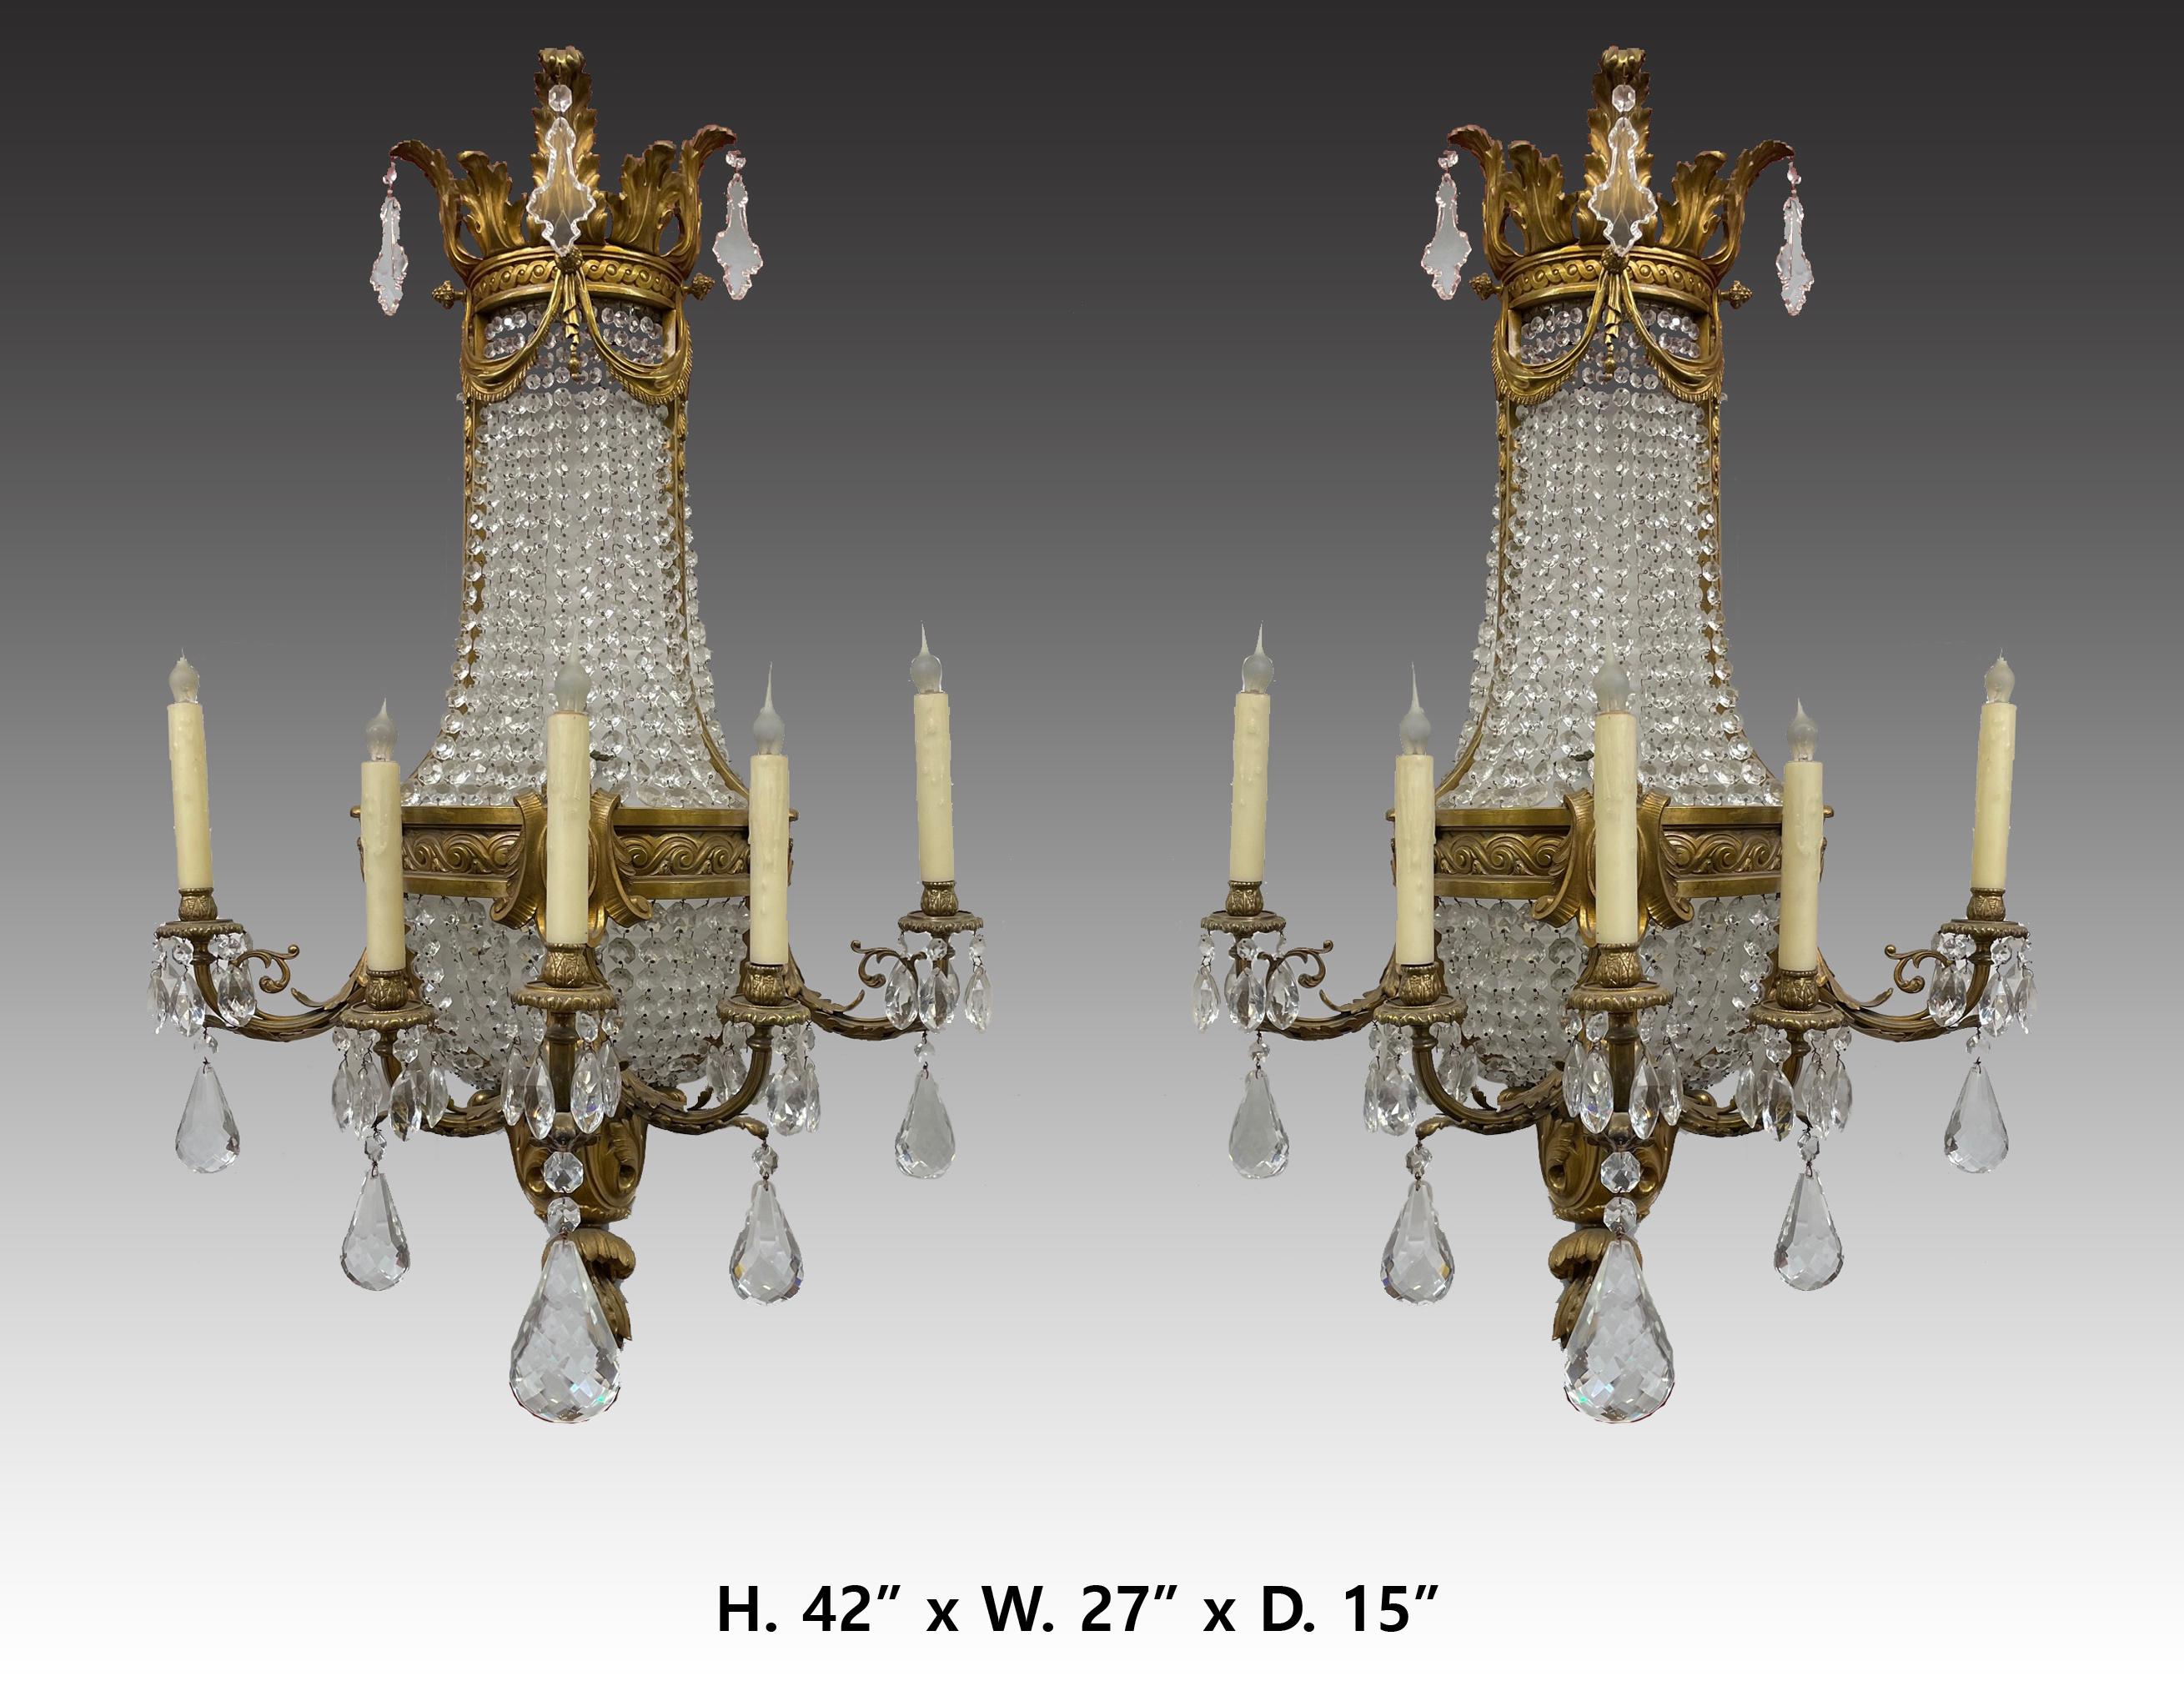 Prächtige große Französisch 19 Jahrhundert Paar Louis XV Stil Ormolu montiert und geschliffenem Kristall Fünf Licht Wandleuchten.
Jedes Detail wurde sorgfältig bedacht, die Wandleuchter sind schön proportioniert und machen eine gute Figur. 
Maße: